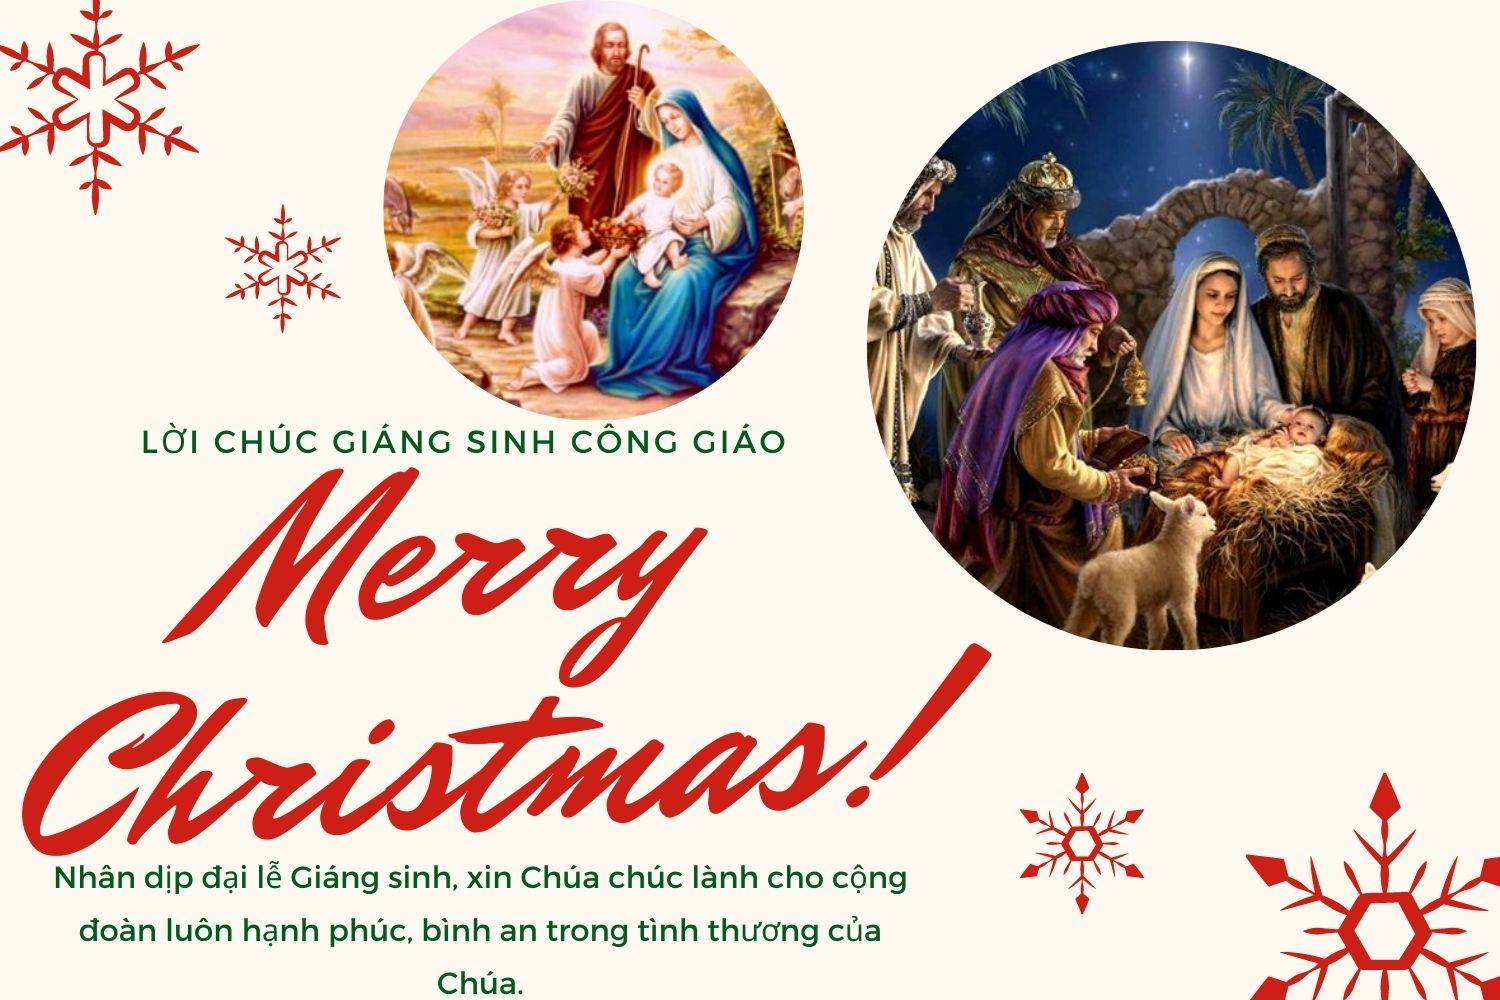 Lời chúc Giáng sinh cho người công giáo hay, ý nghĩa nhất năm 2021 - Ảnh 5.